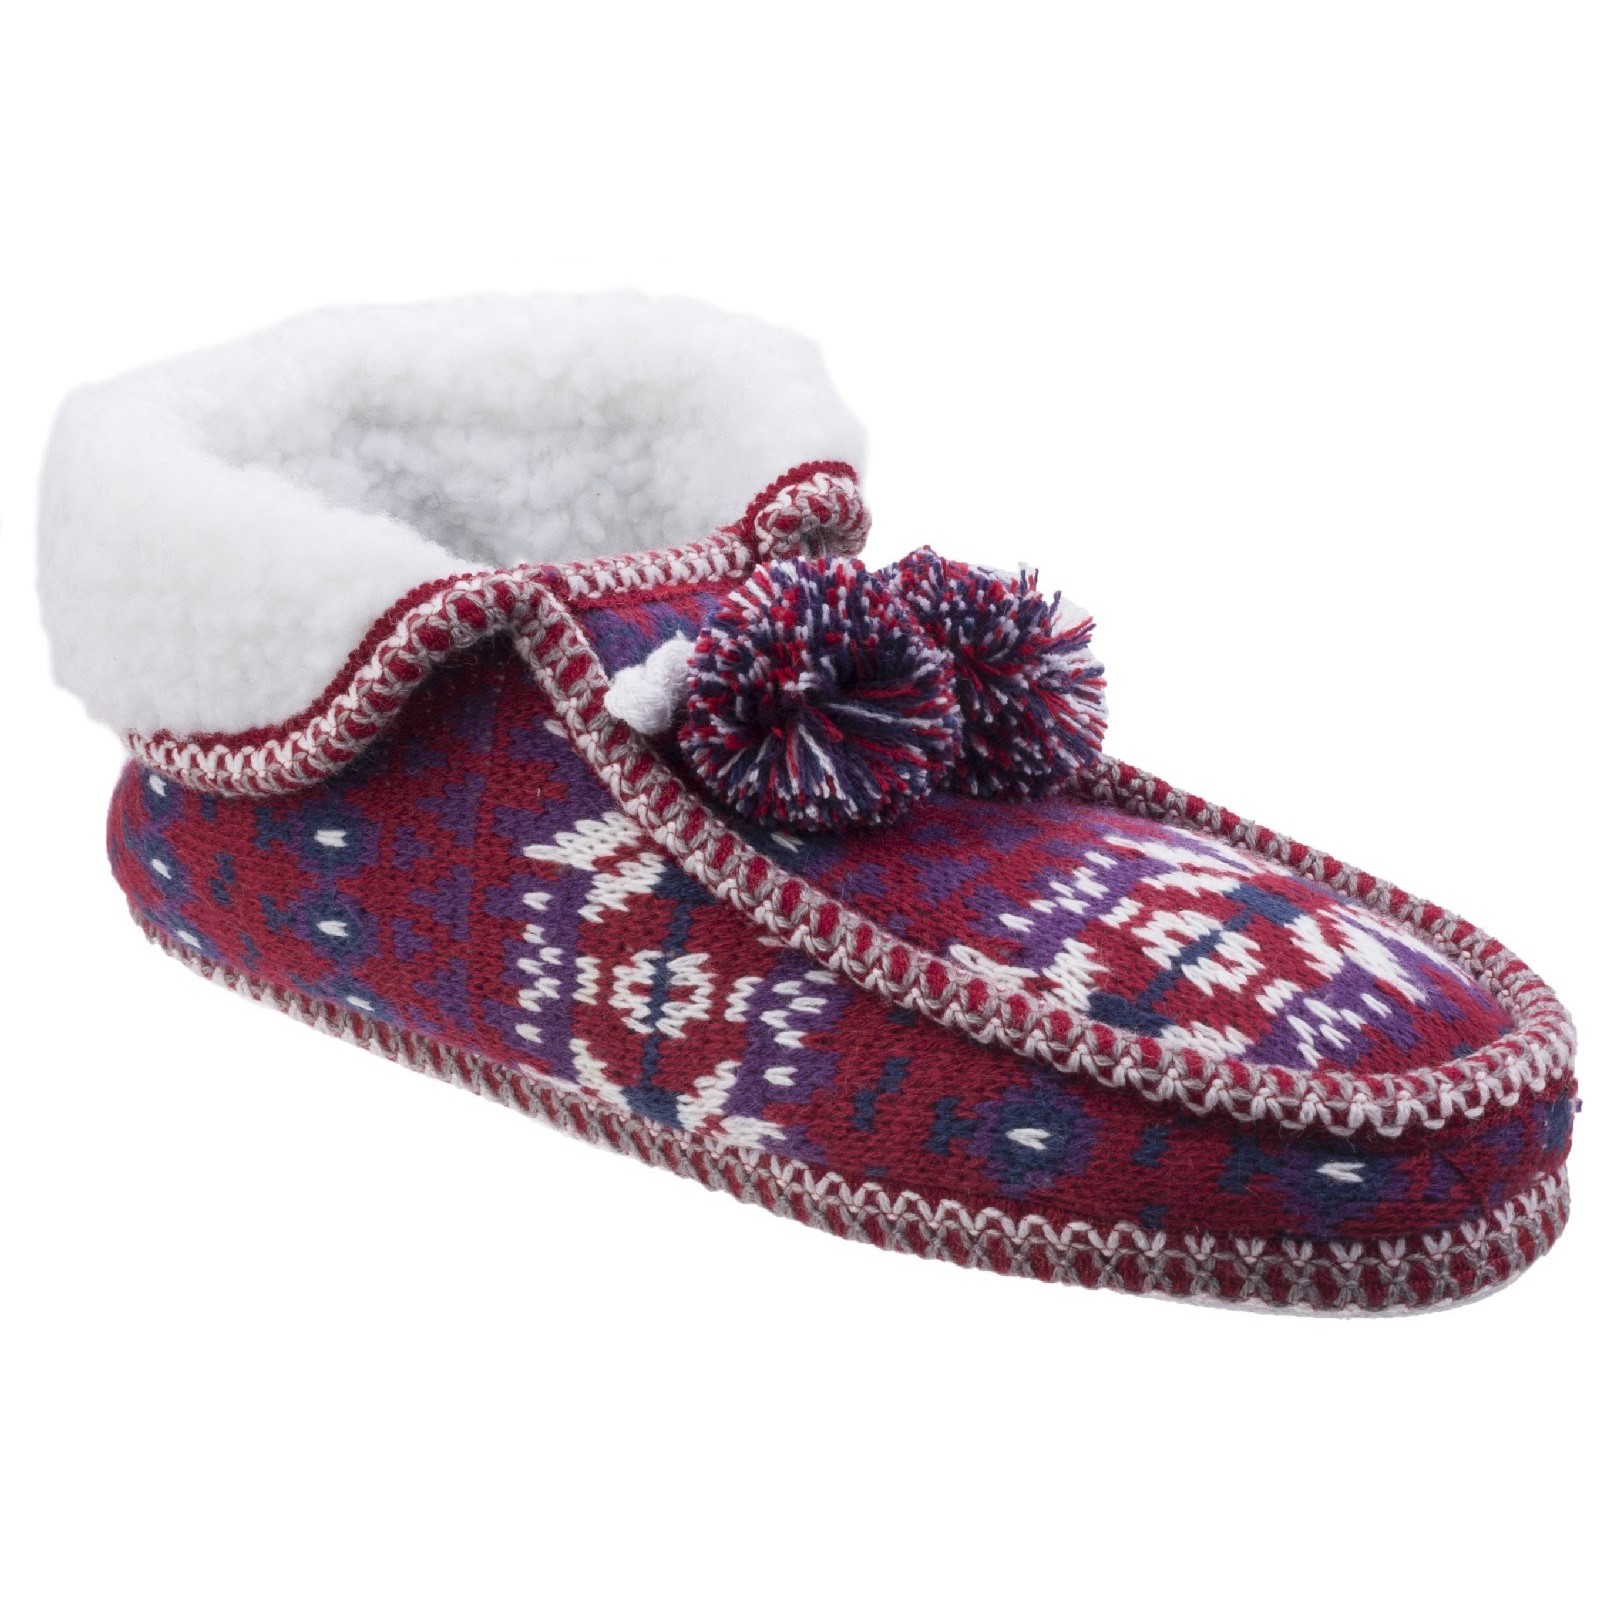 Lapland Knitted Slipper